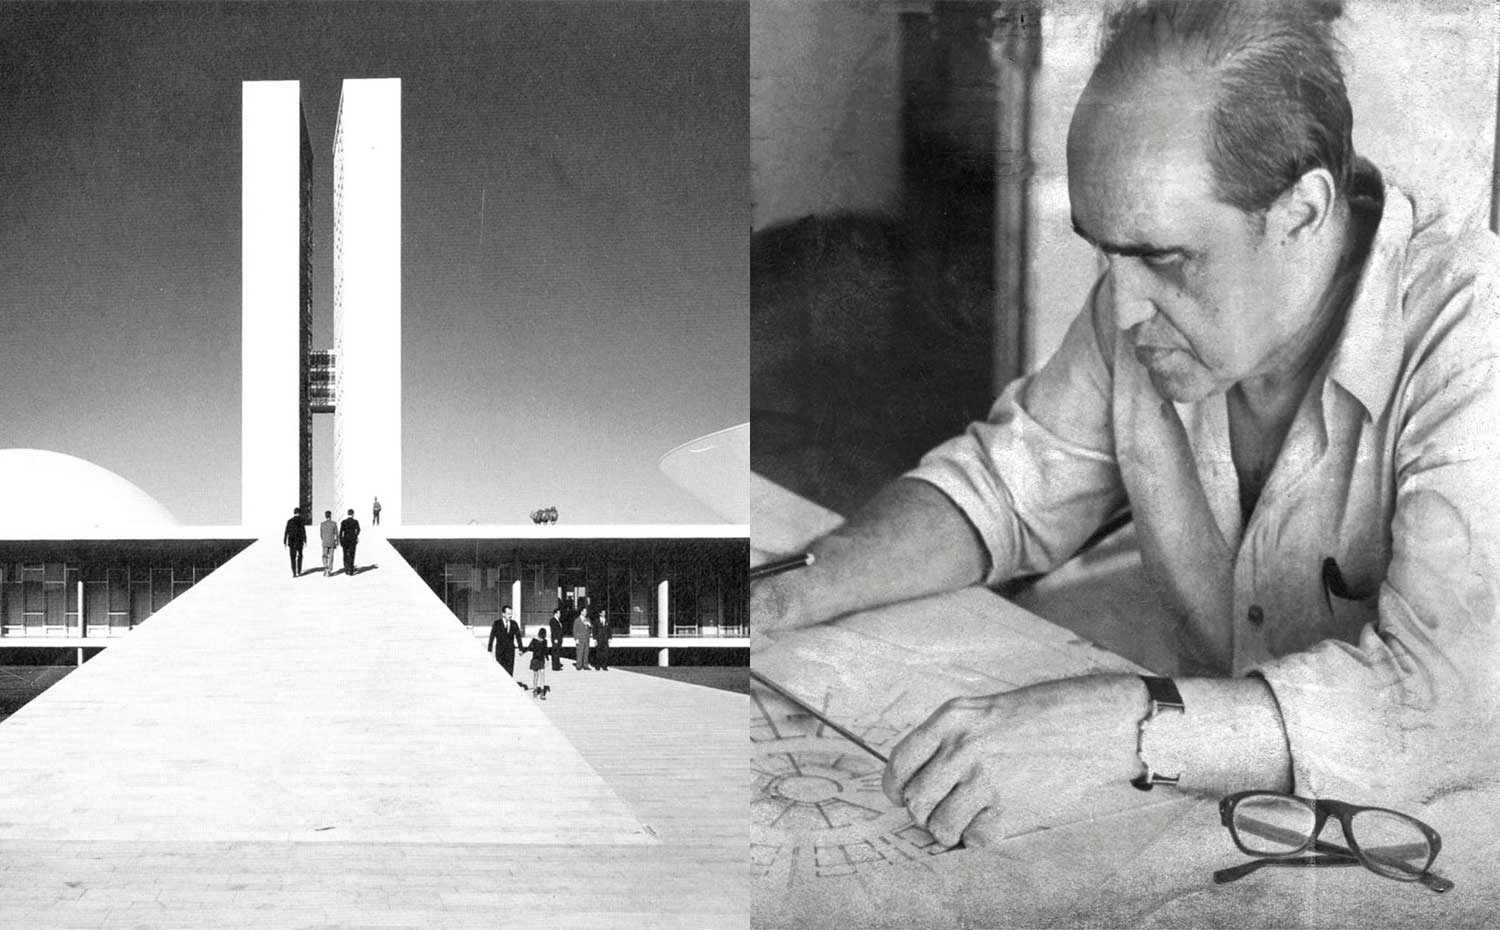 Niemyerok. [01] Oscar Niemeyer